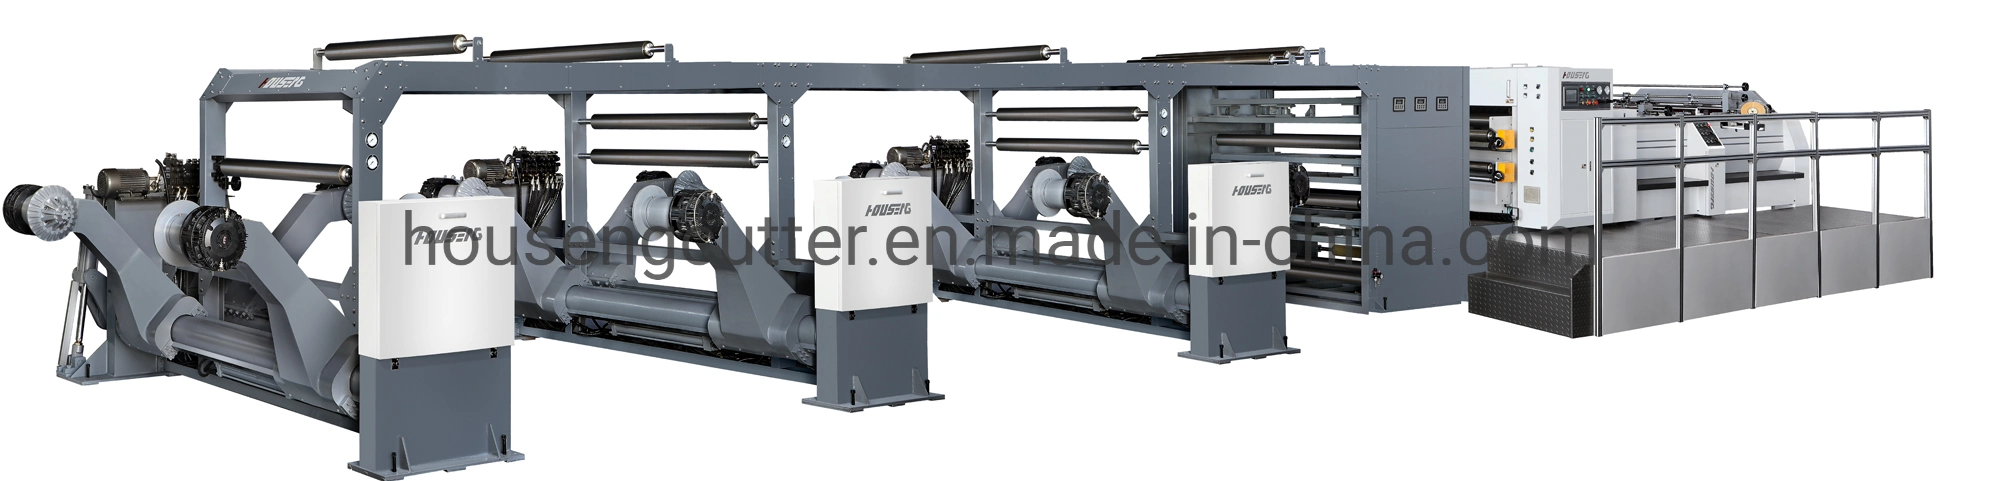 Papierrollenschneider Maschine, Duplex Papier / Pappe / Graues Papier / Kraftpapier Schneidemaschine von Rotary Messer Einzel Doppel-Haspel-Querschneider